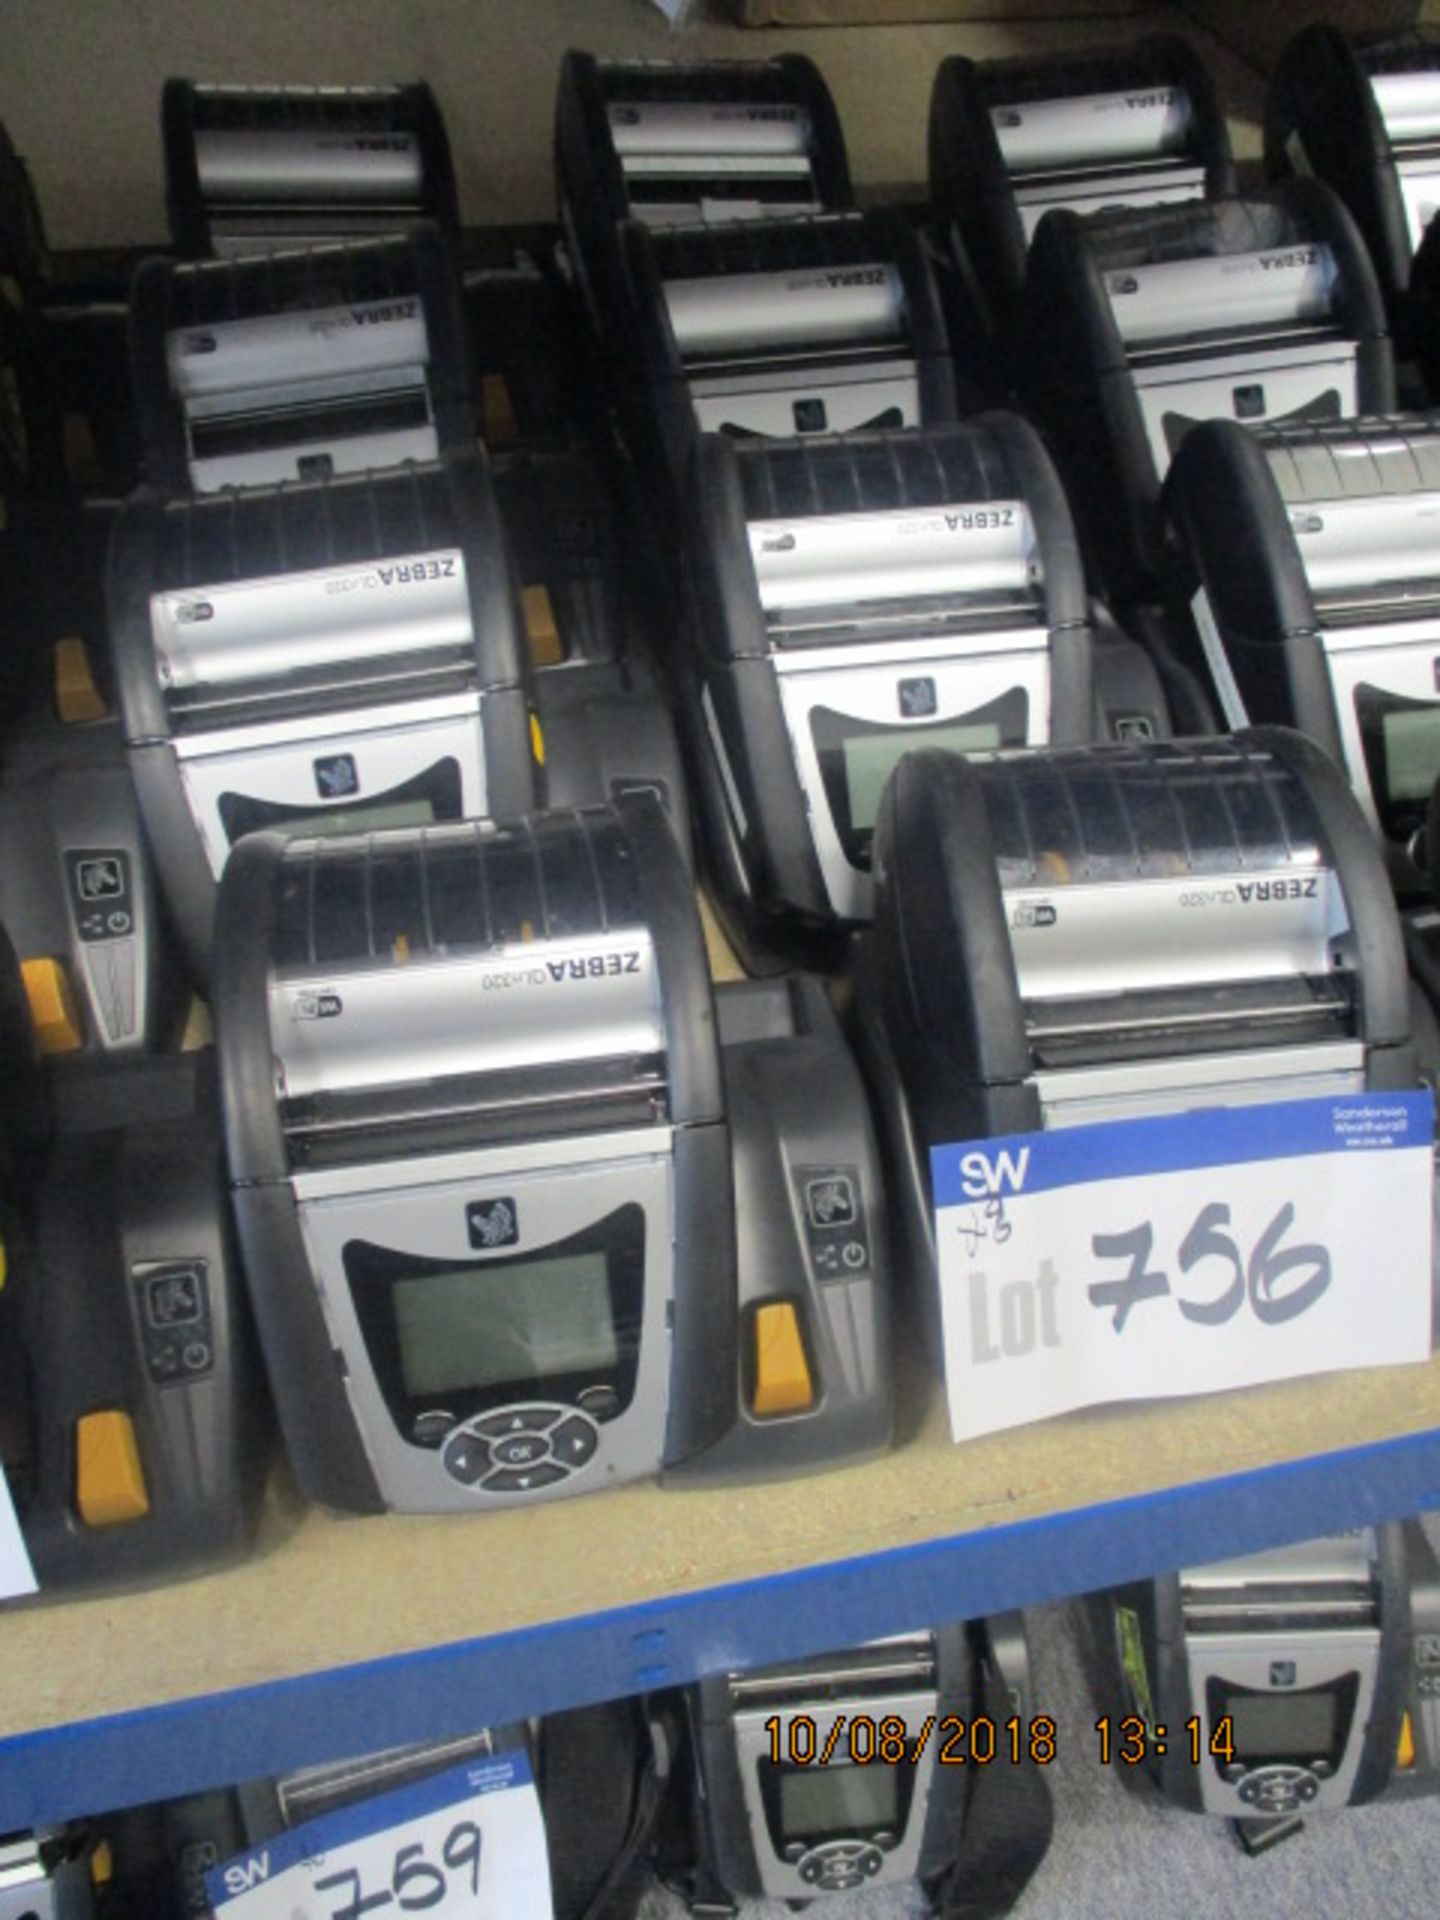 8 x Zebra QLn320 Label Printers